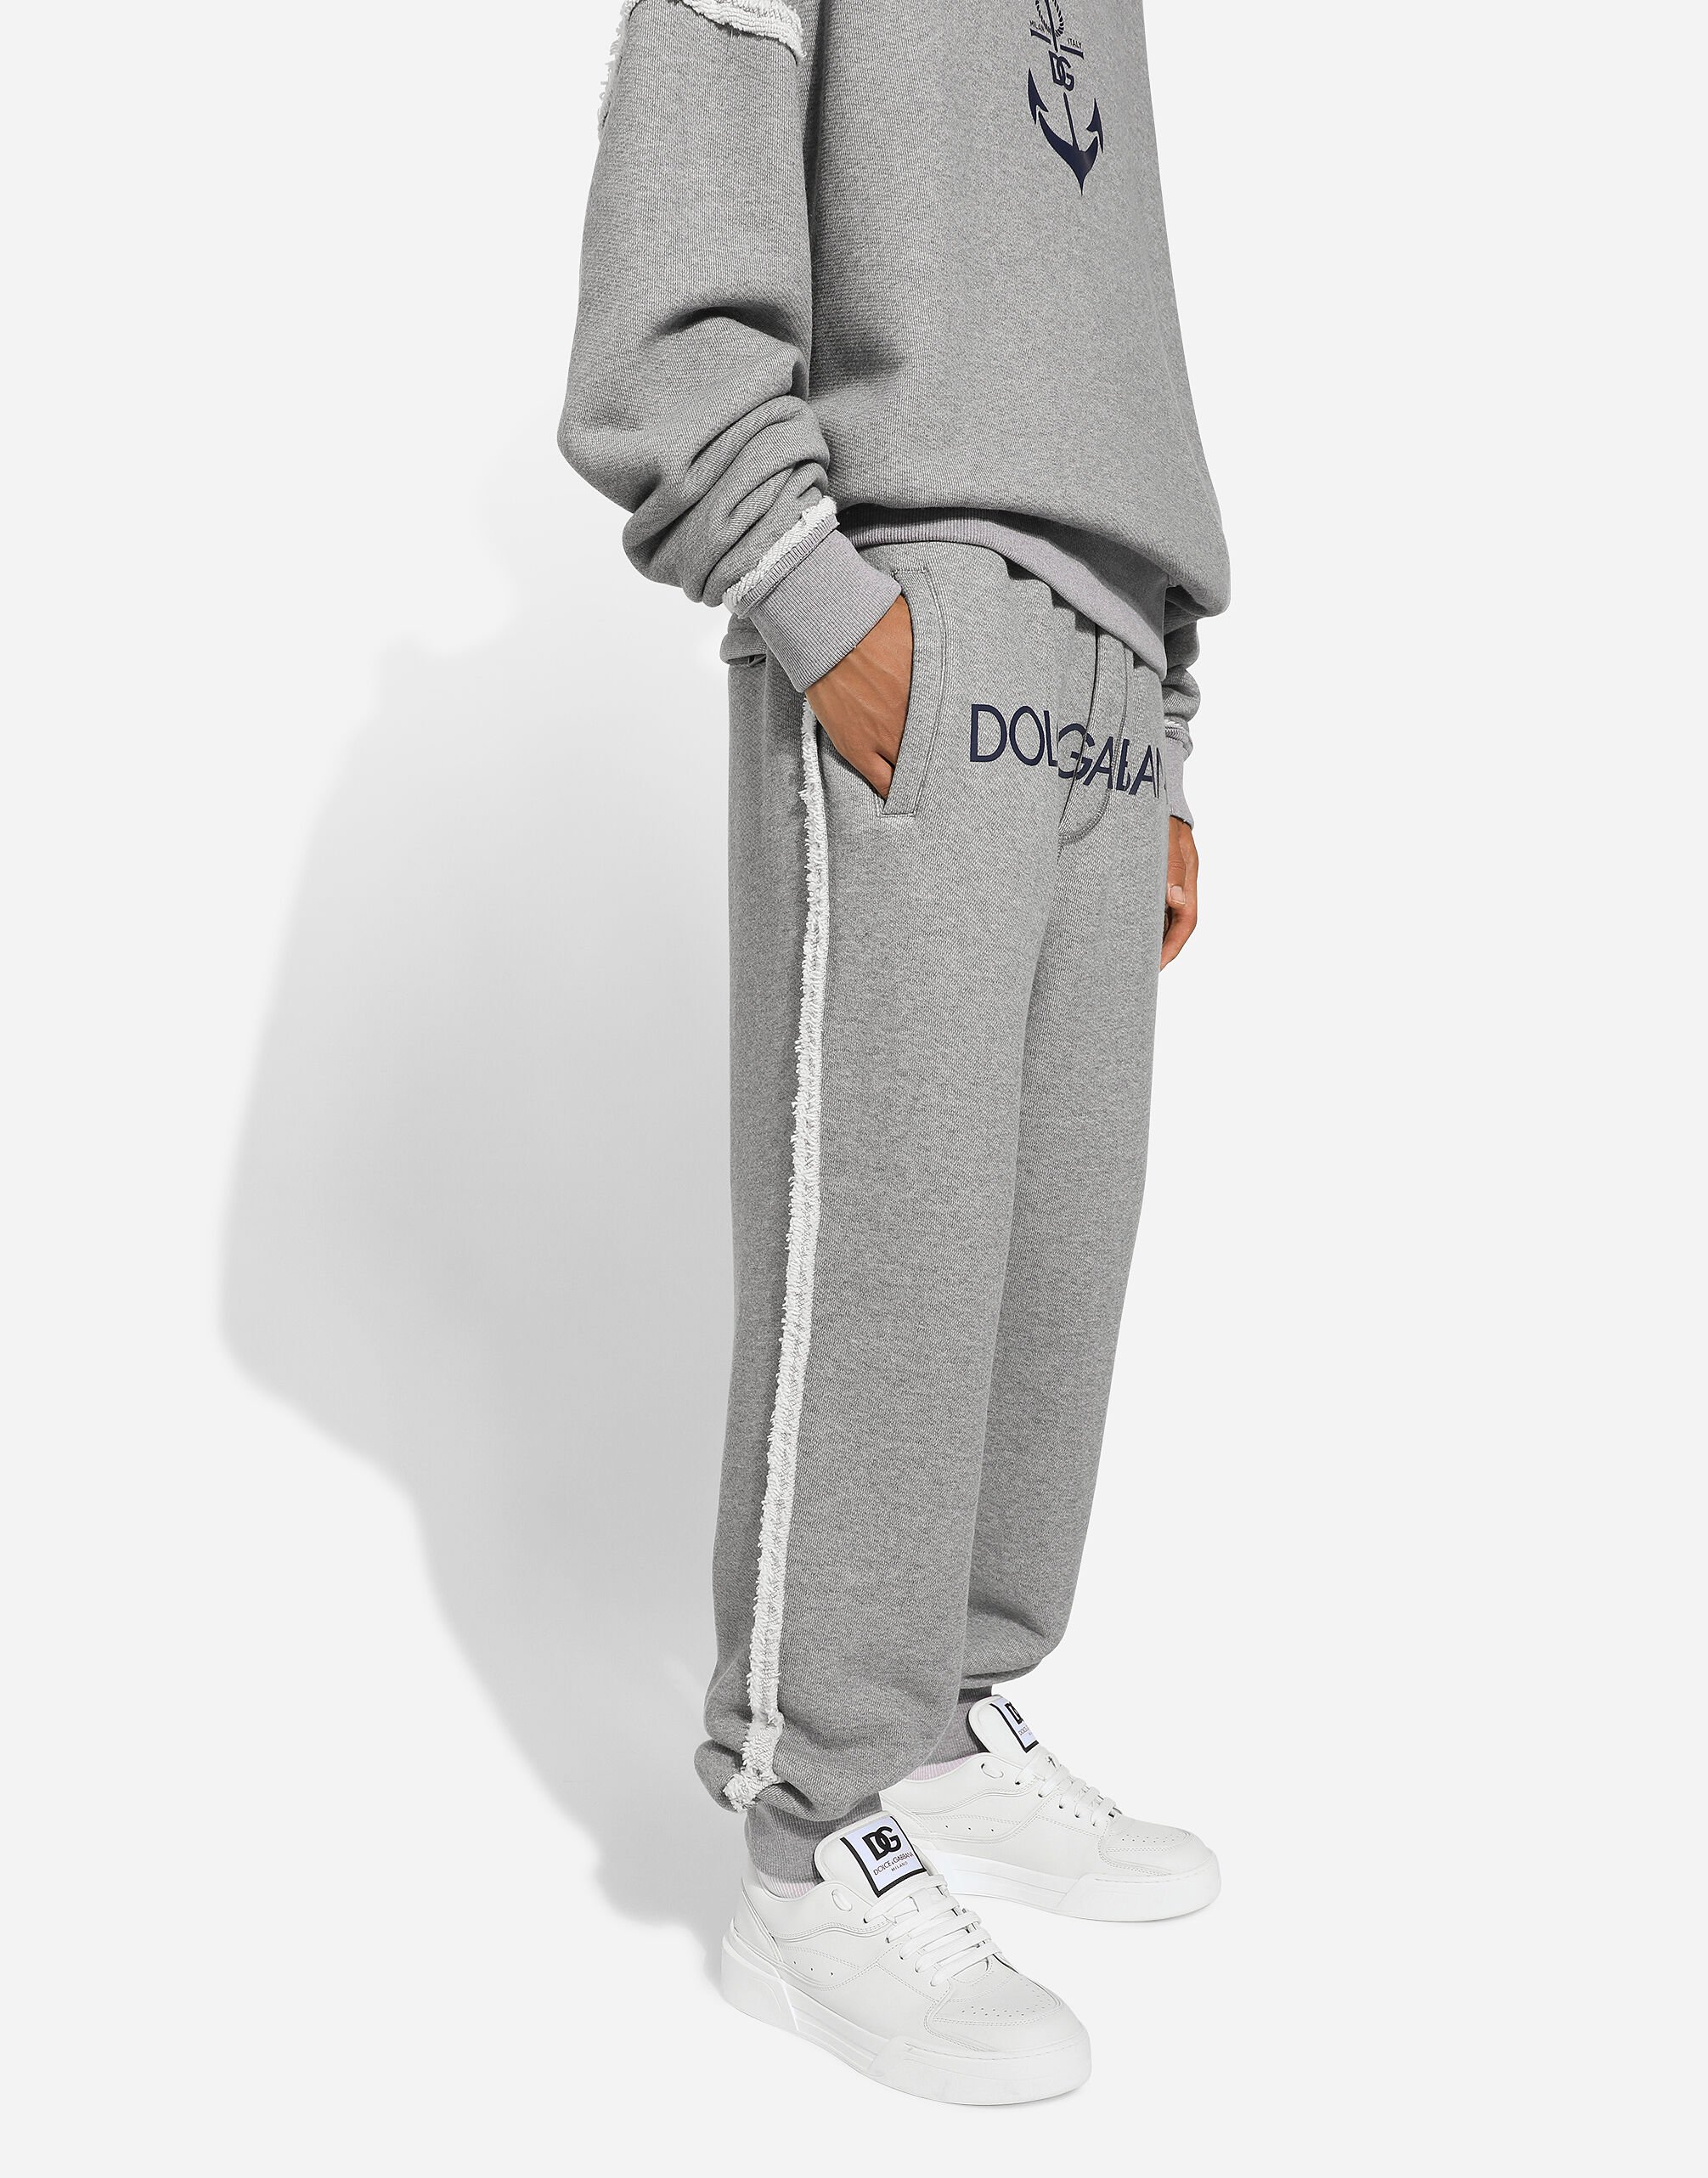 Dolce & Gabbana Jogging pants with Dolce&Gabbana logo male Grey